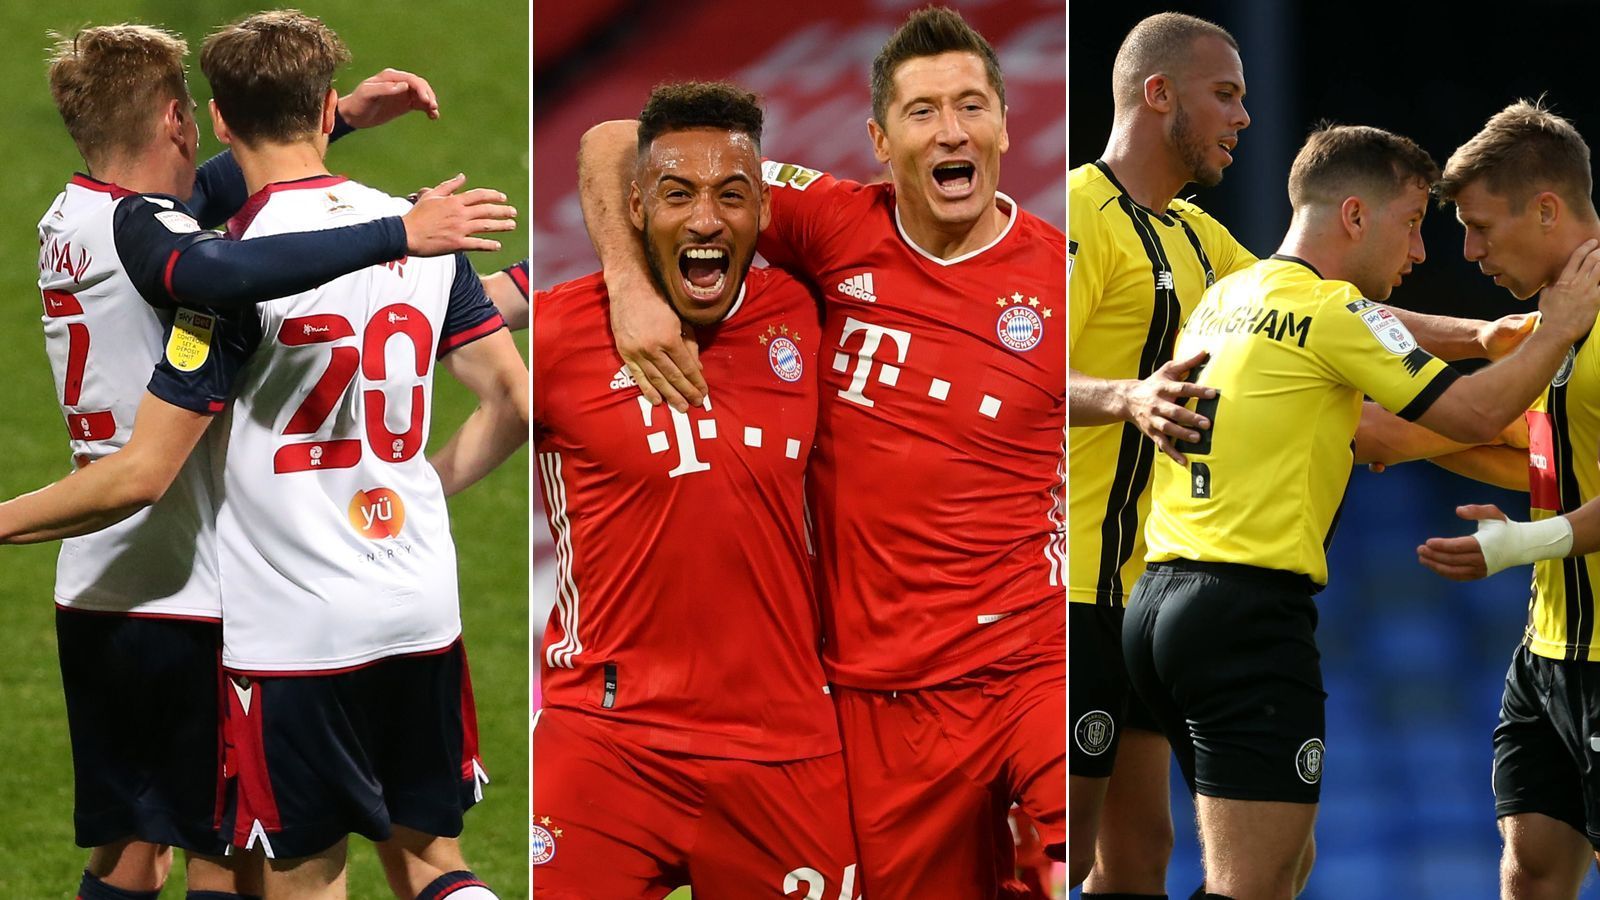 
                <strong>FIFA 21: Mit diesen zehn Teams müsst ihr den Karrieremodus zocken</strong><br>
                Seit dem 6. Oktober ist FIFA 21 in Deutschland erhältlich und viele Fans freuen sich besonders auf den überarbeiteten Karrieremodus. ran.de zeigt, mit welchen zehn Teams es sich für euch lohnen könnte, den Karrieremodus mit möglichst viel Spaß zu zocken.
              